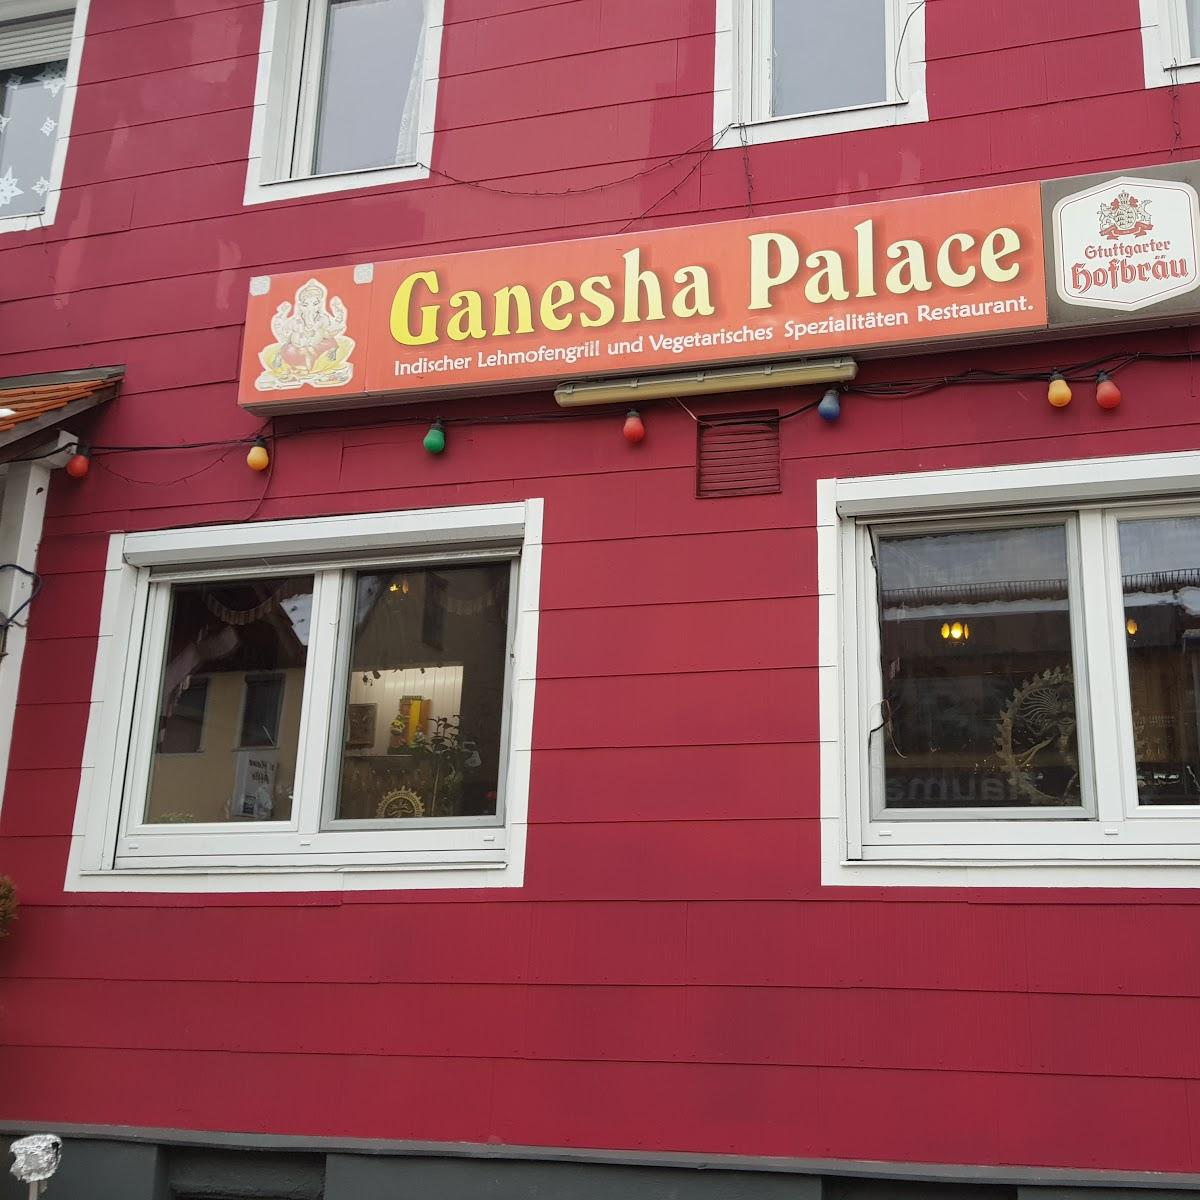 Restaurant "Restaurant Ganesha Palace, Original Indische Spezialitäten" in  Albstadt